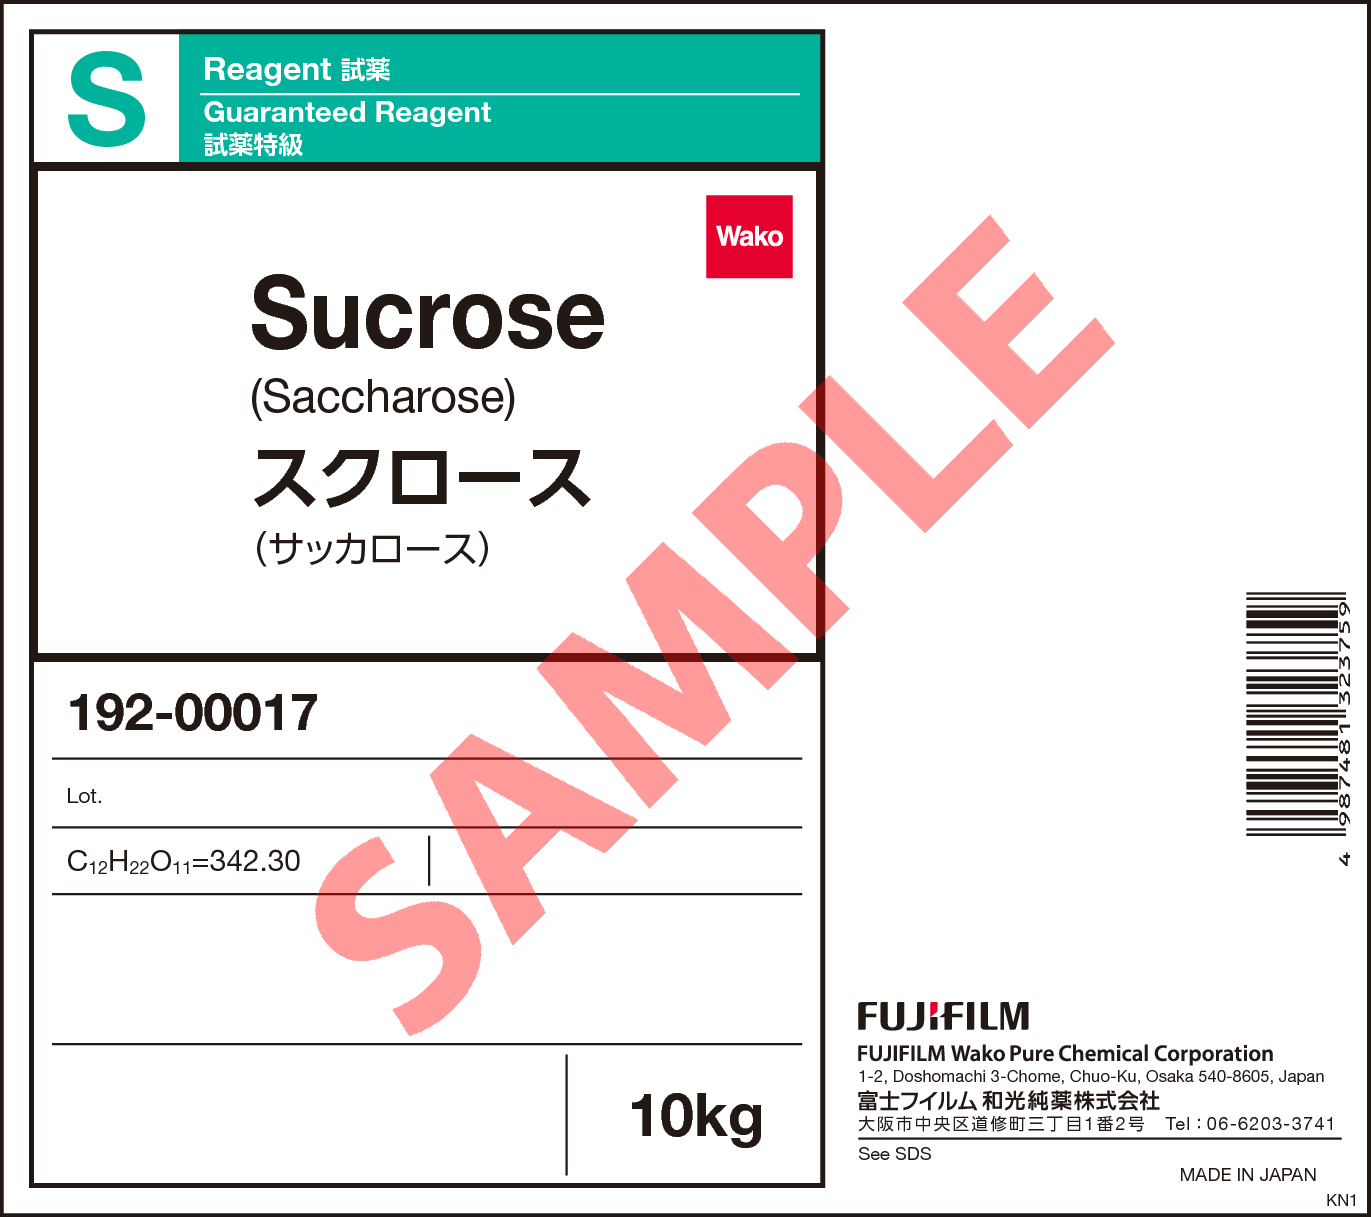 57-50-1・スクロース・Sucrose・190-00013・192-00017・192-00012・194 